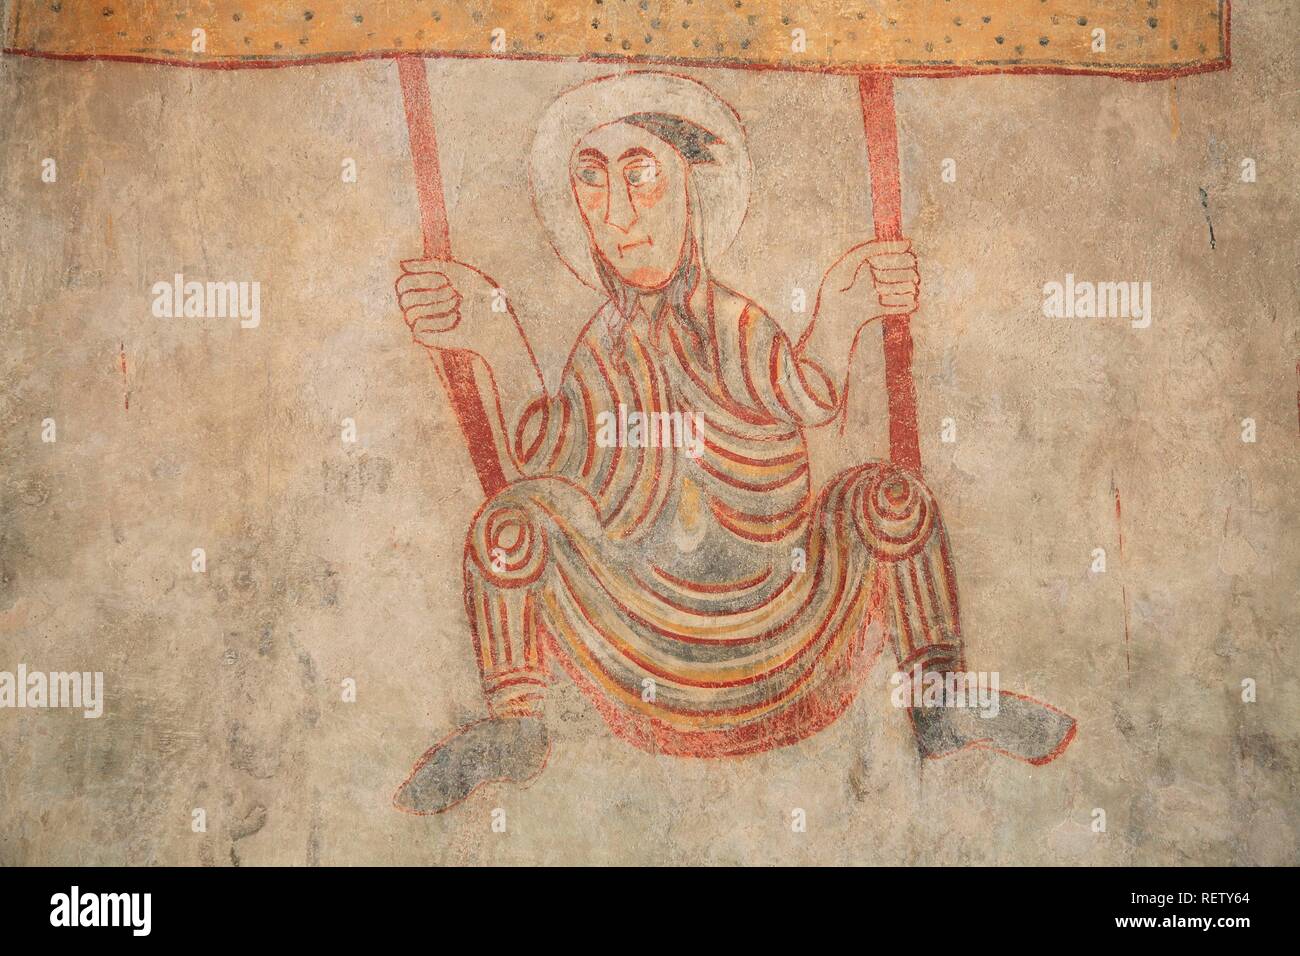 La plus ancienne des fresques dans le monde de langue allemande, 10 - 11 siècle dans l'église de Saint Prokulus Naturns, Tyrol du Sud, Italie, Europe Banque D'Images